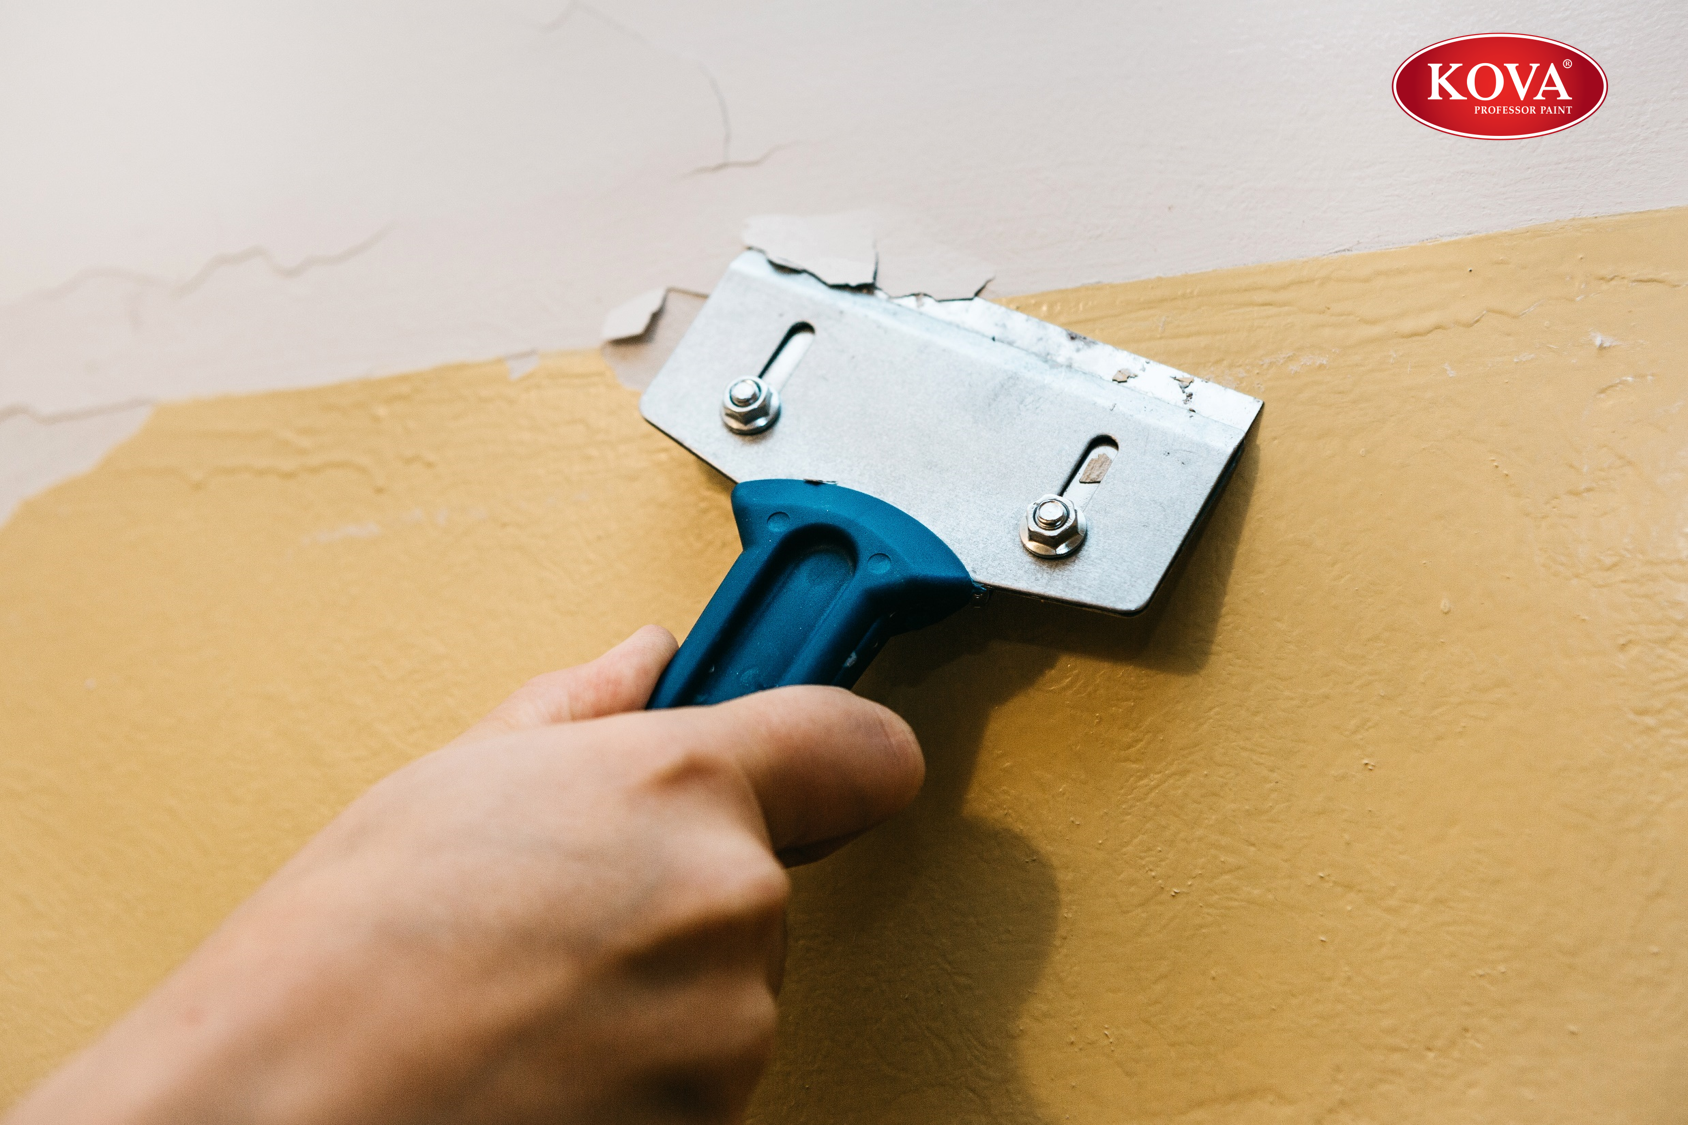 Hướng dẫn sử dụng quy trình sơn tường cũ chuyên nghiệp và đảm bảo hiệu quả cao